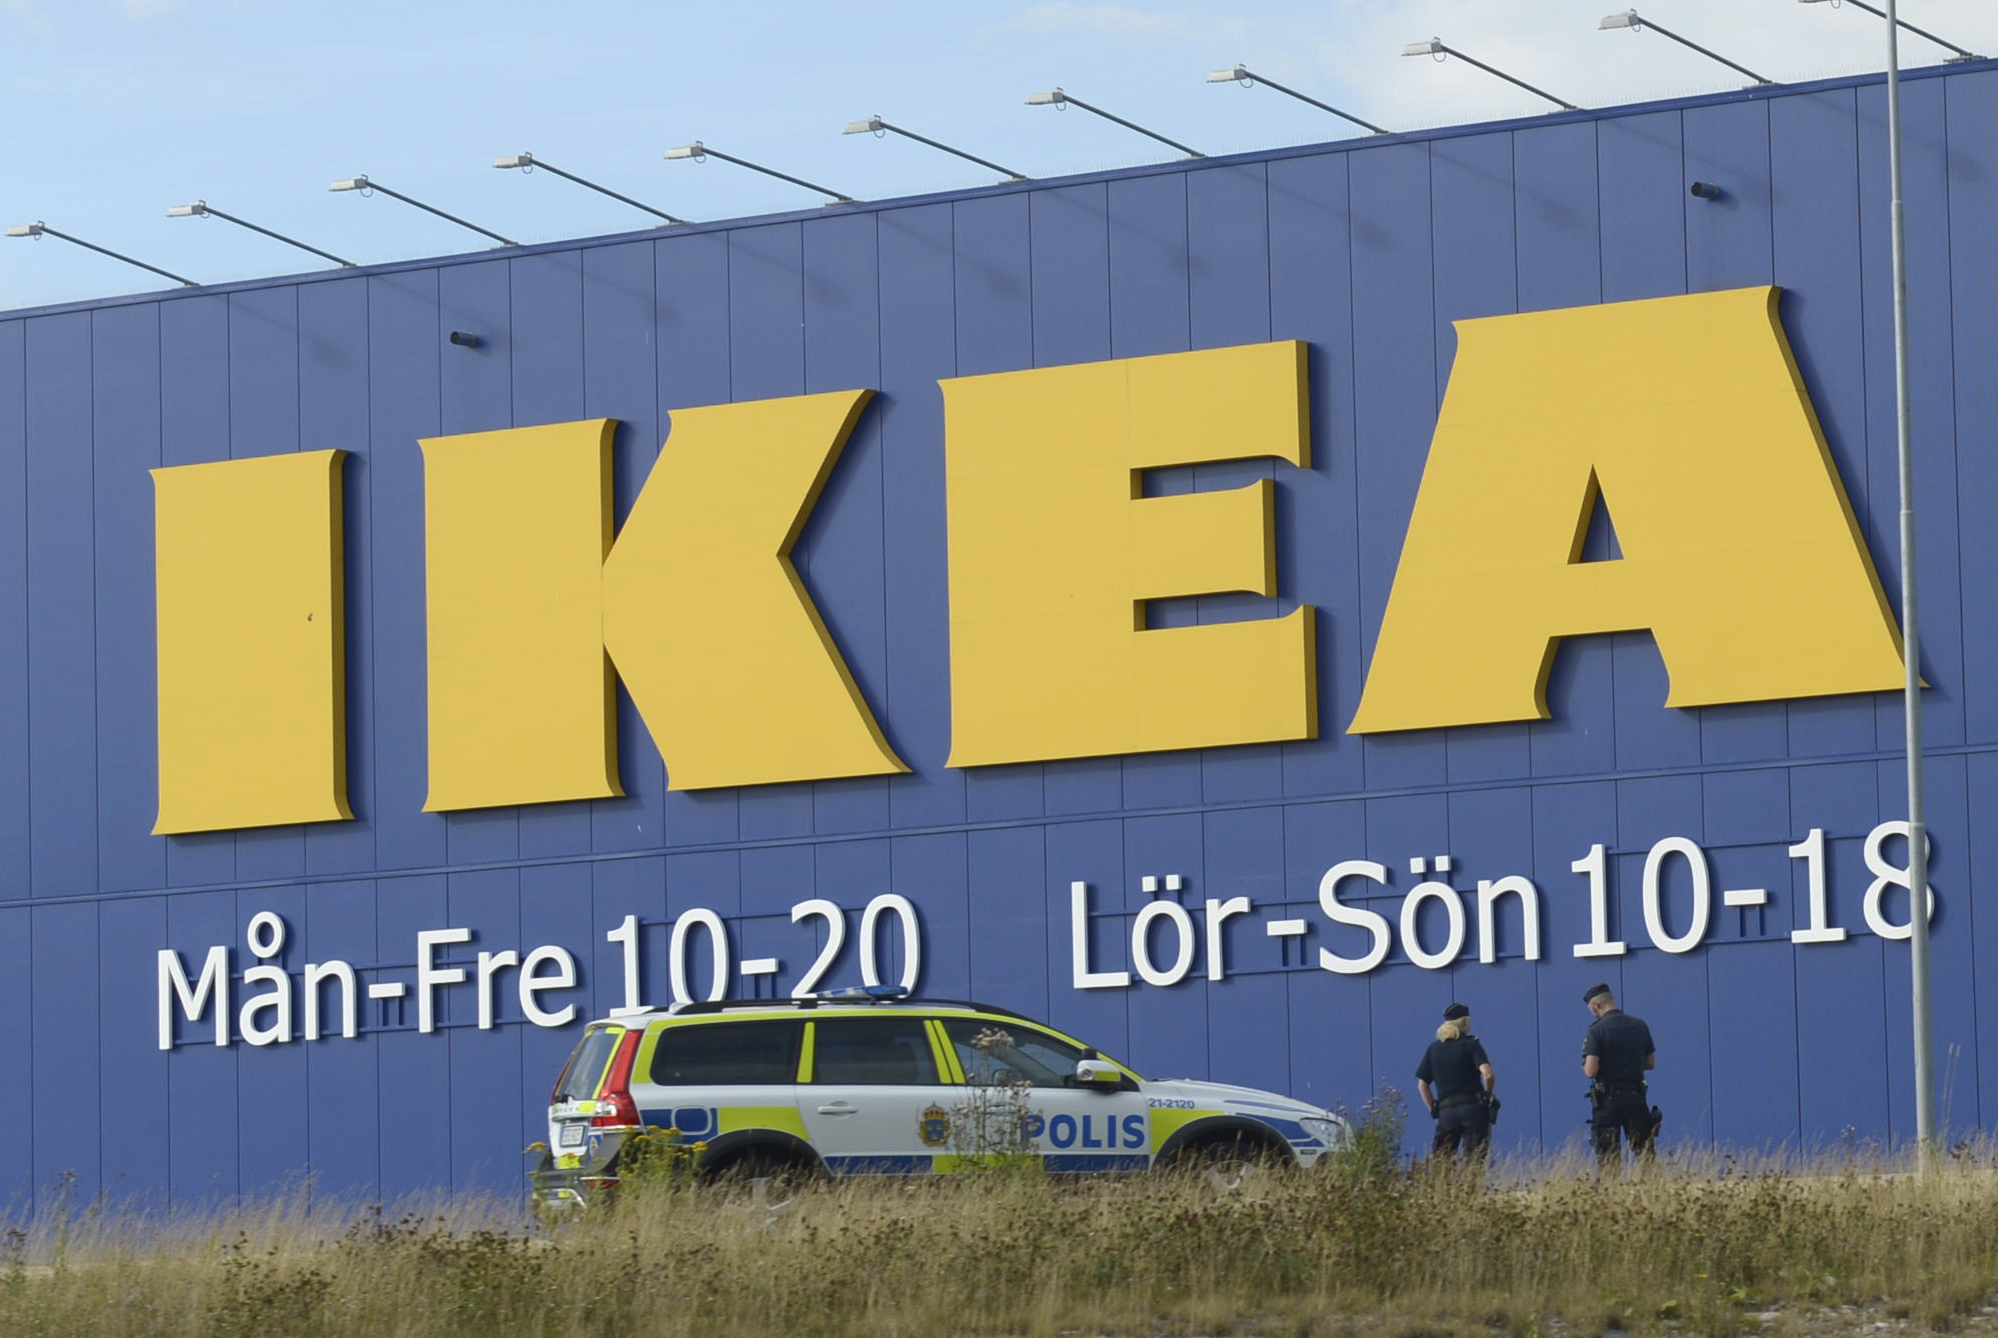 Vansinnesdådet skedde inne på Ikea i Västerås.